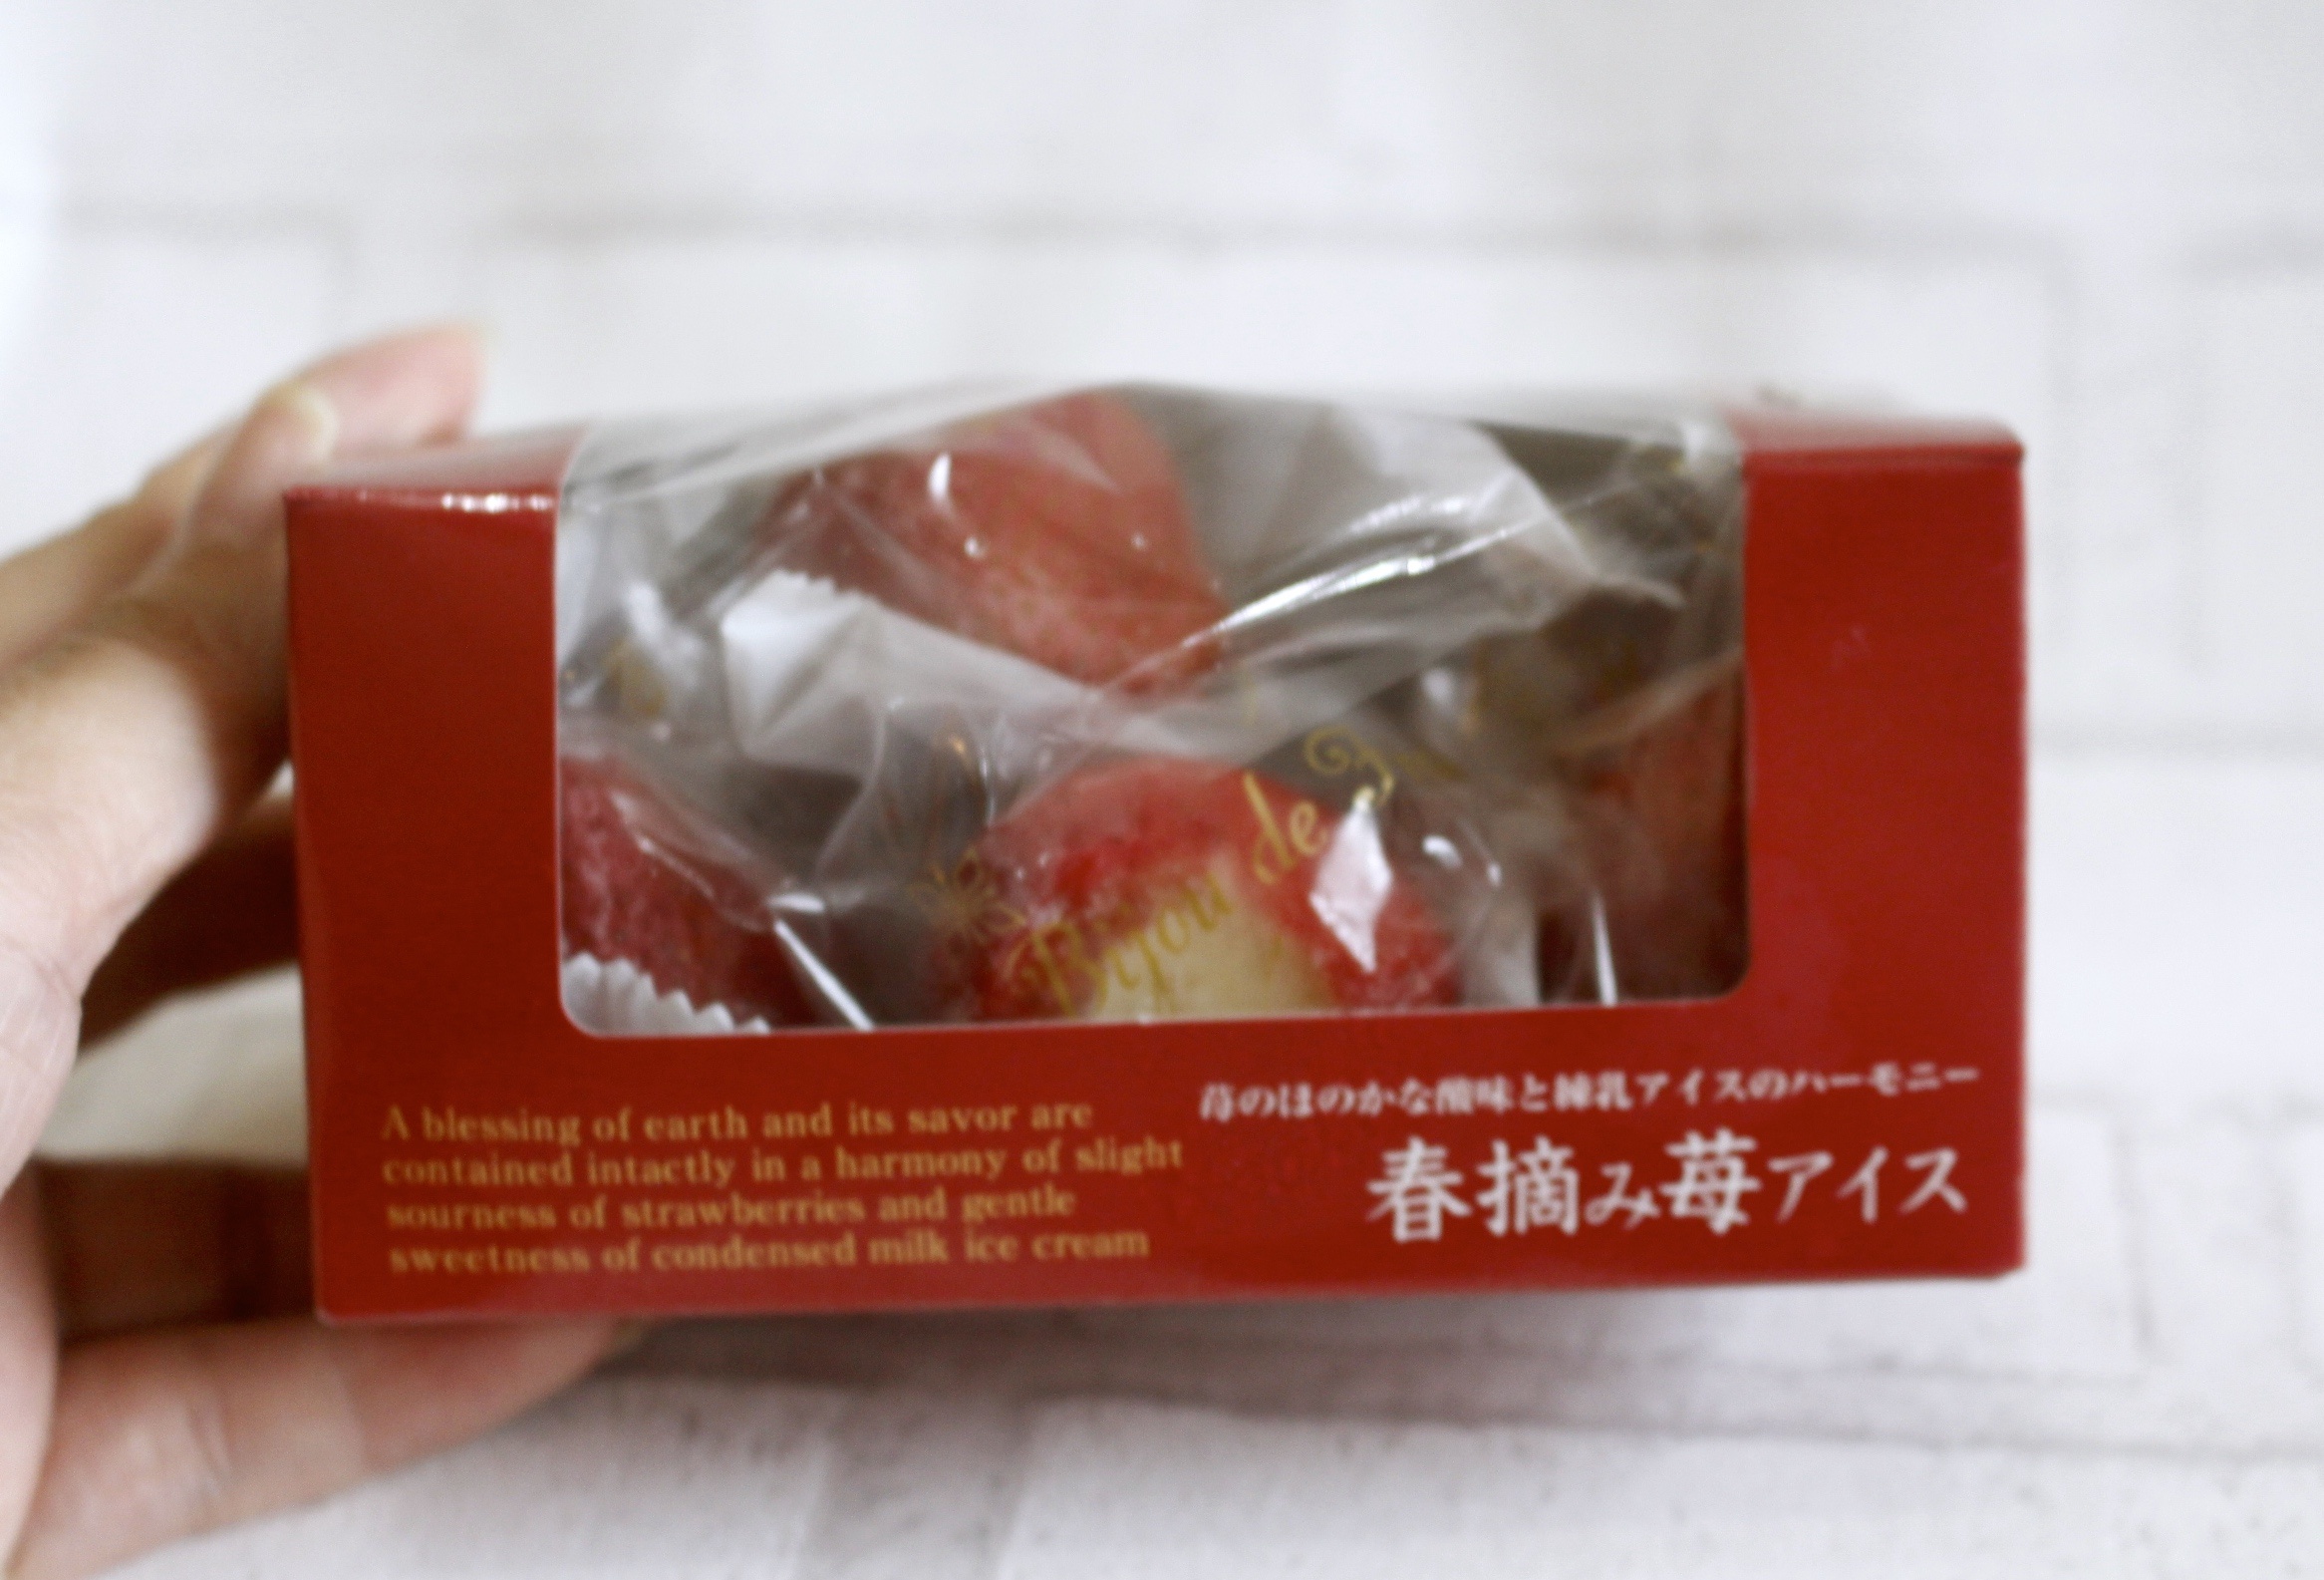 【全家超商 春摘草莓果實煉乳冰】不用飛日本！FamilyMart就能買到山口縣「整顆草莓煉乳冰」